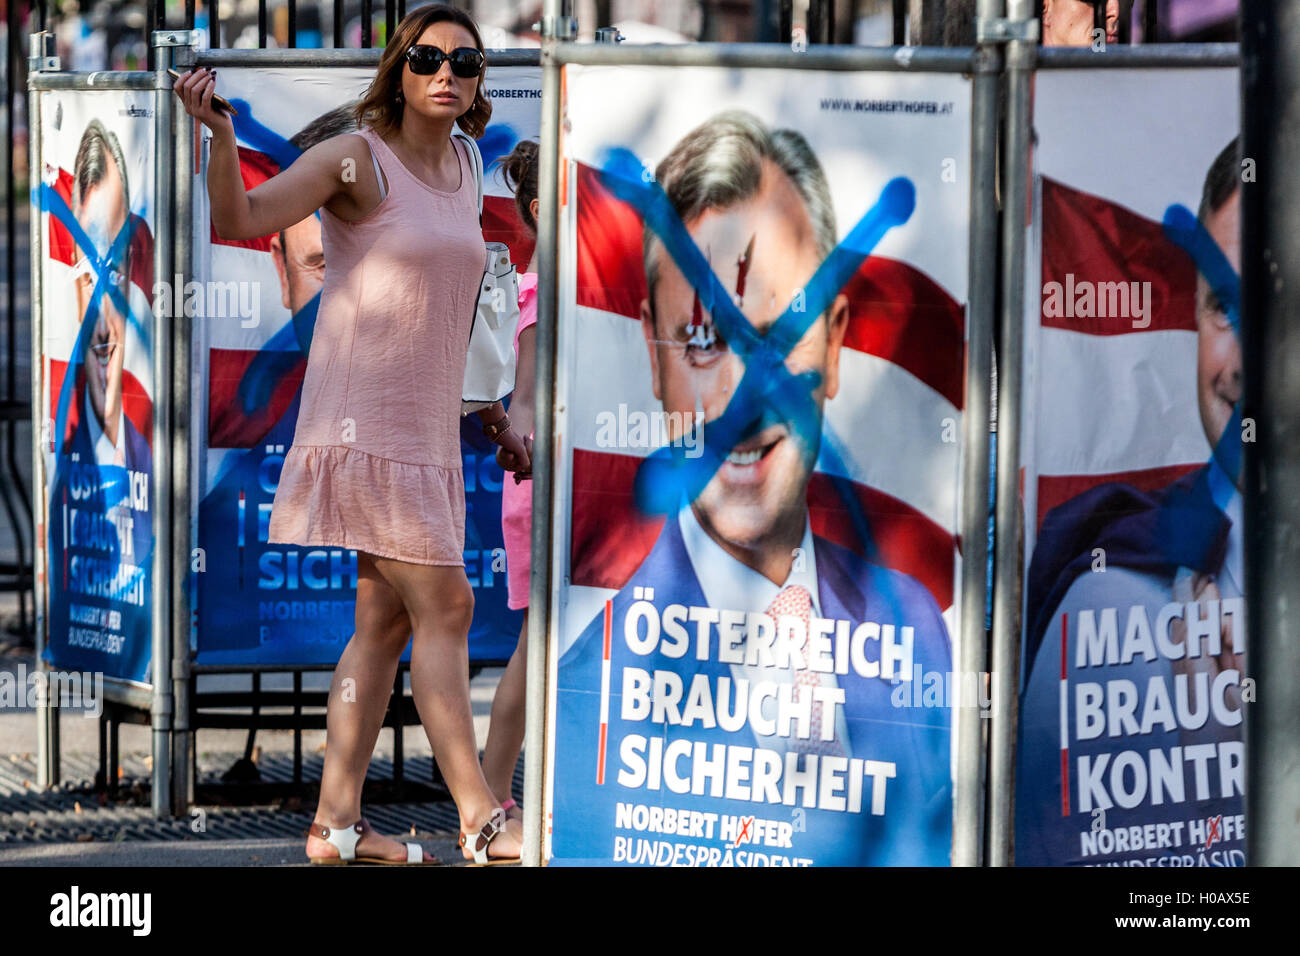 Campagna di manifesti per il Presidente Norbert Hofer collocato nel centro di Vienna, Austria Foto Stock